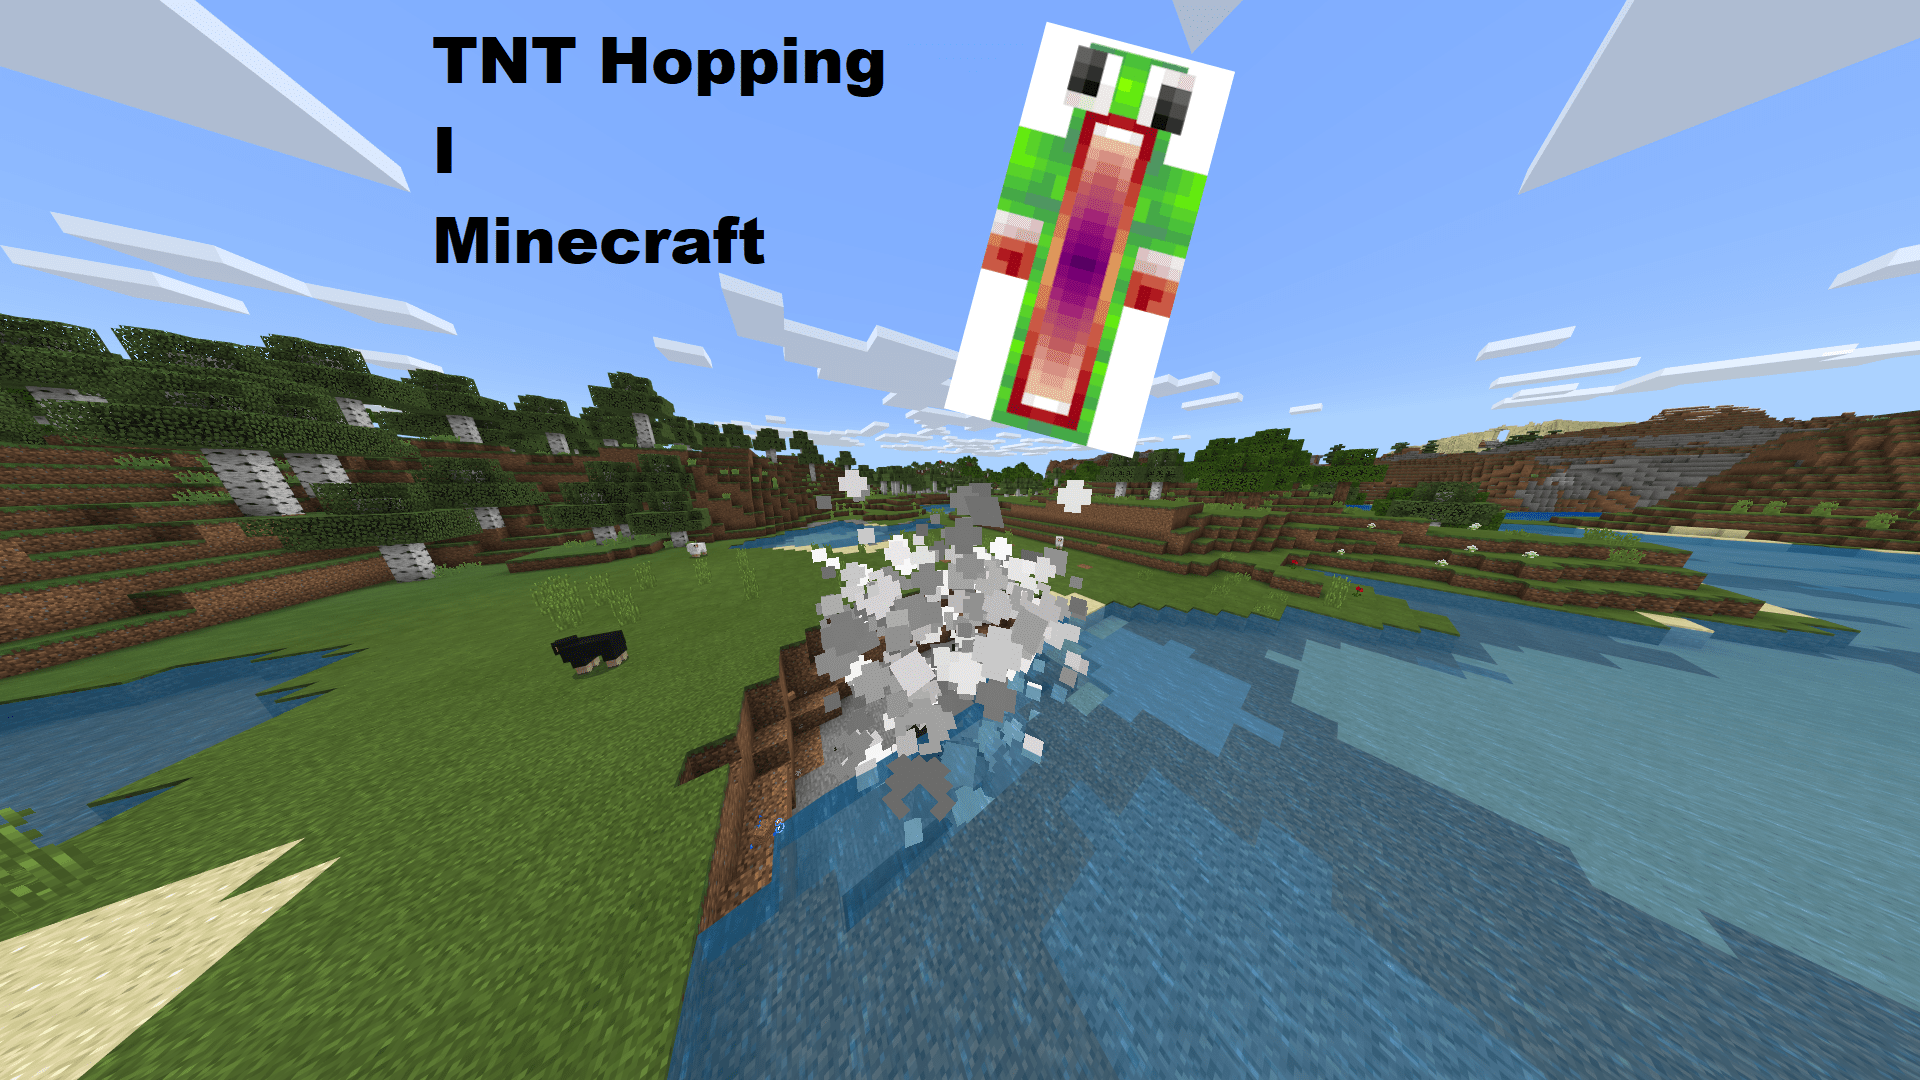 TNT hopping i Minecraft